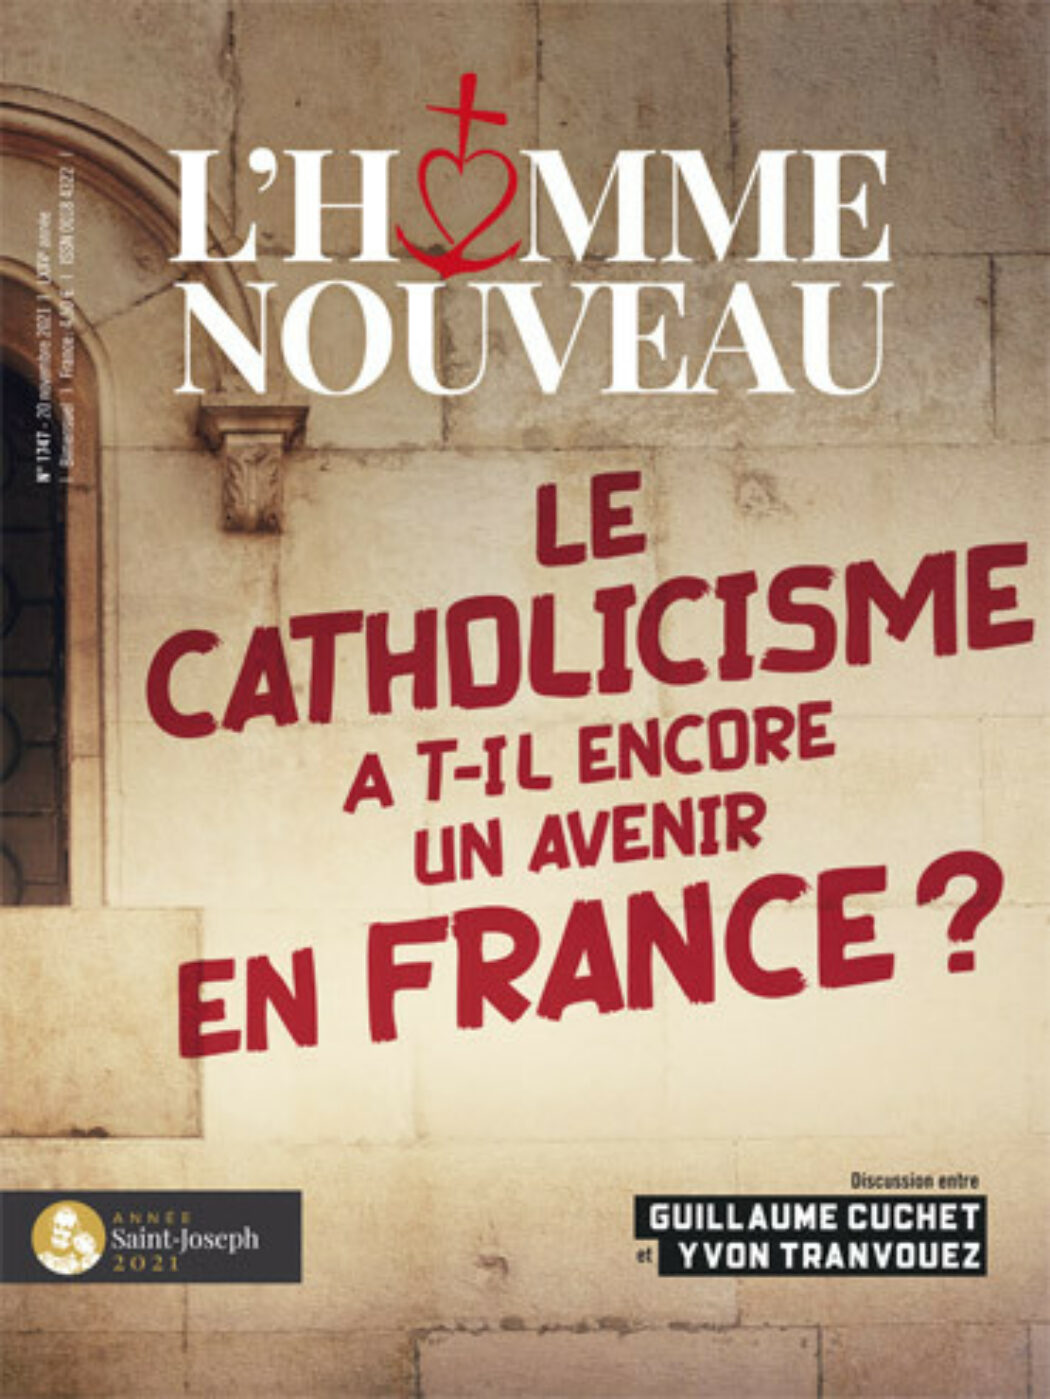 Yvon Tranvouez : “Et puis franchement, le débat sur Vatican II ça intéresse qui aujourd’hui ?”